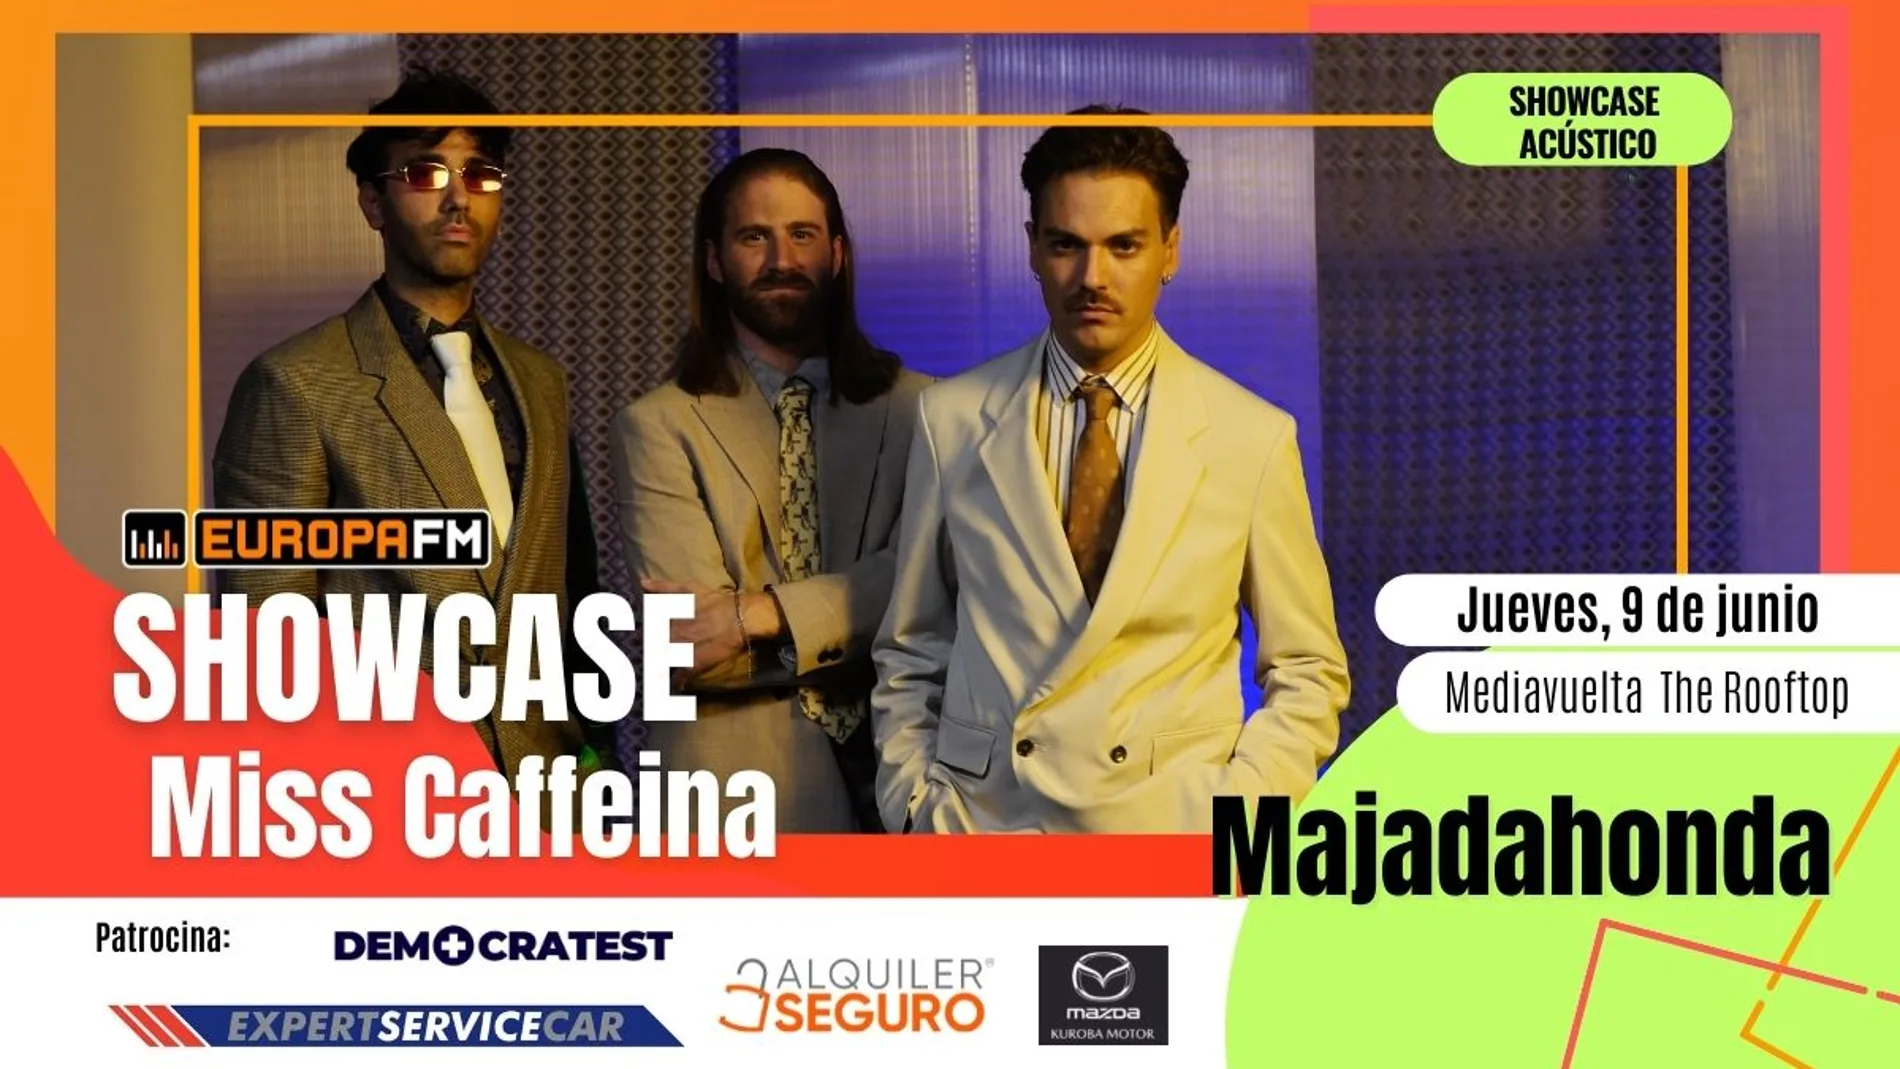 Apúntate al showcase de Miss Caffeina el próximo 9 de junio en Madrid